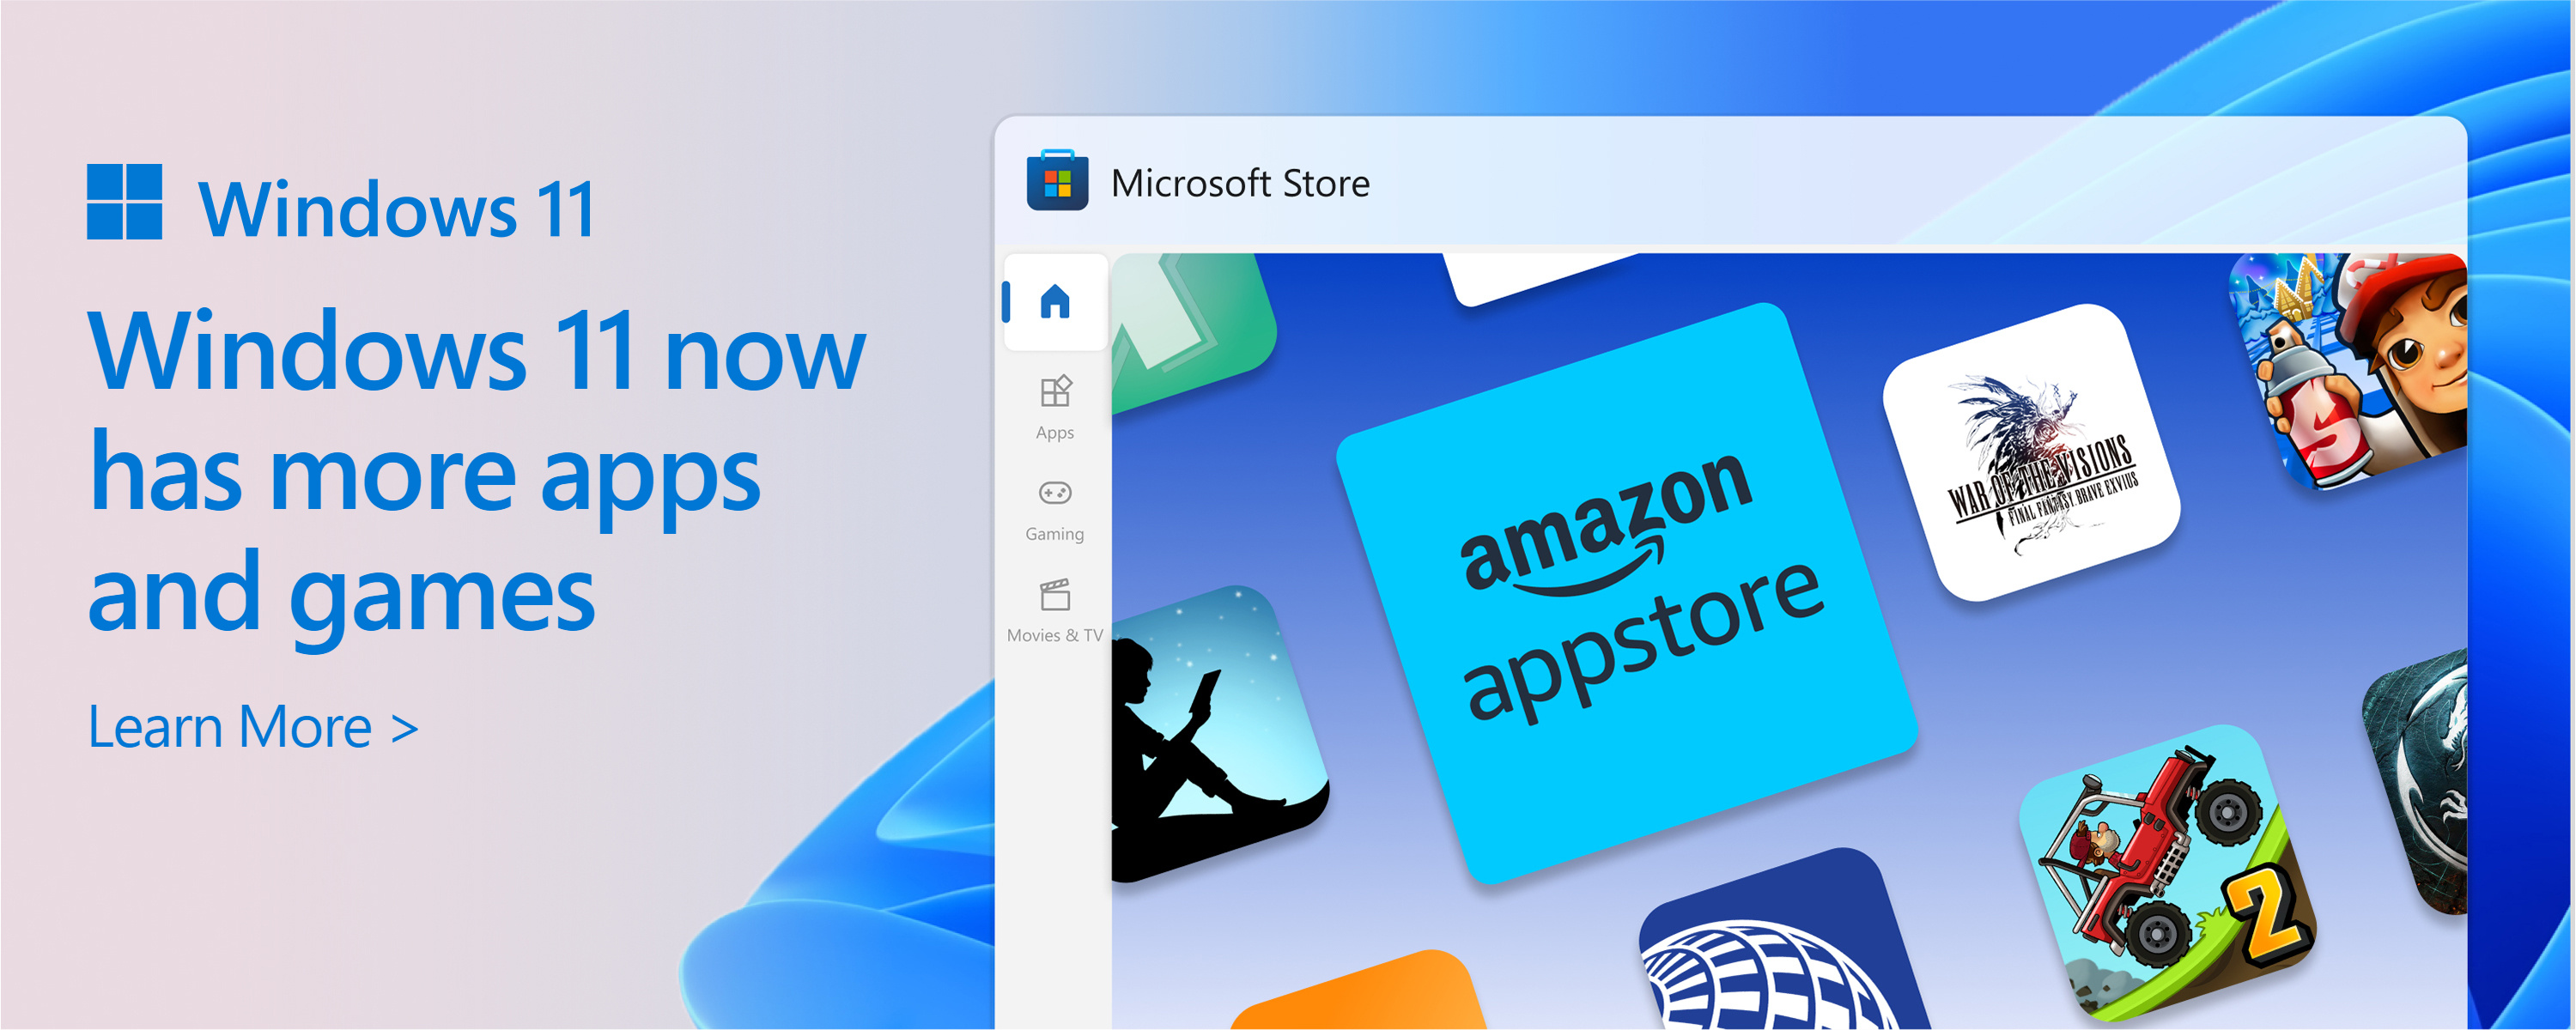 สกรีนช็อตของ Microsoft Store ที่มีข้อความ: แค็ตตาล็อกของ Microsoft Store กําลังเพิ่มขึ้น Windows 11 มอบแอปและเกมที่คุณต้องการได้มากขึ้นตามต้องการ